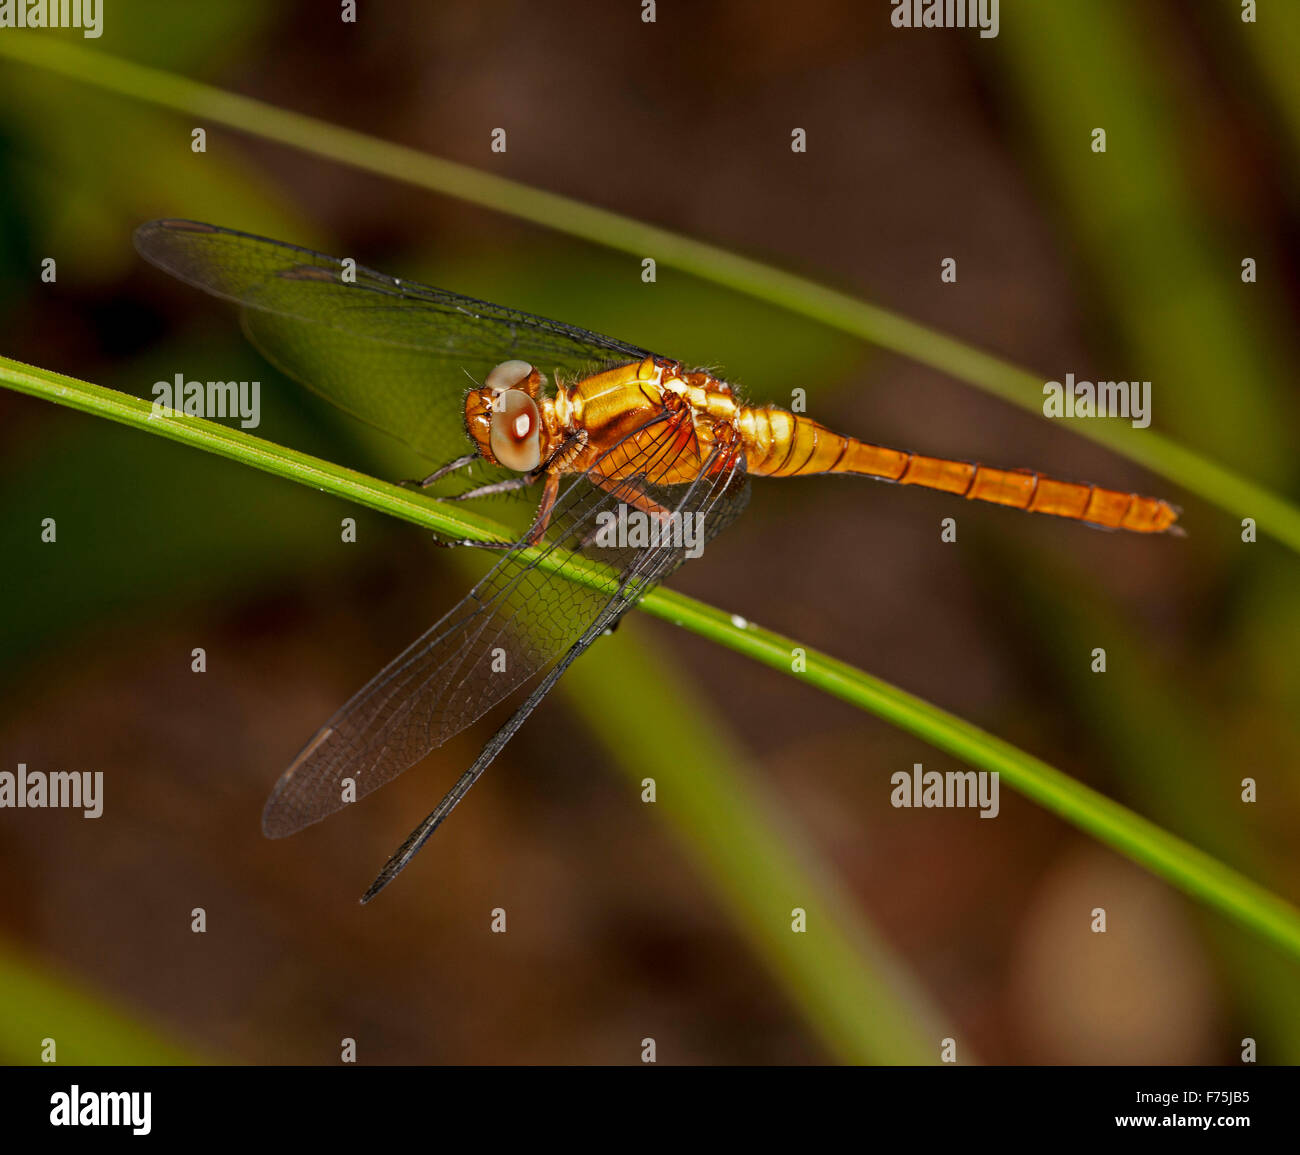 Fiery australiano skimmer dragonfly, Orthetrum villosovittatum, con cuerpo de color naranja brillante, ojos grandes, y lacy alas en tallo verde de planta Foto de stock